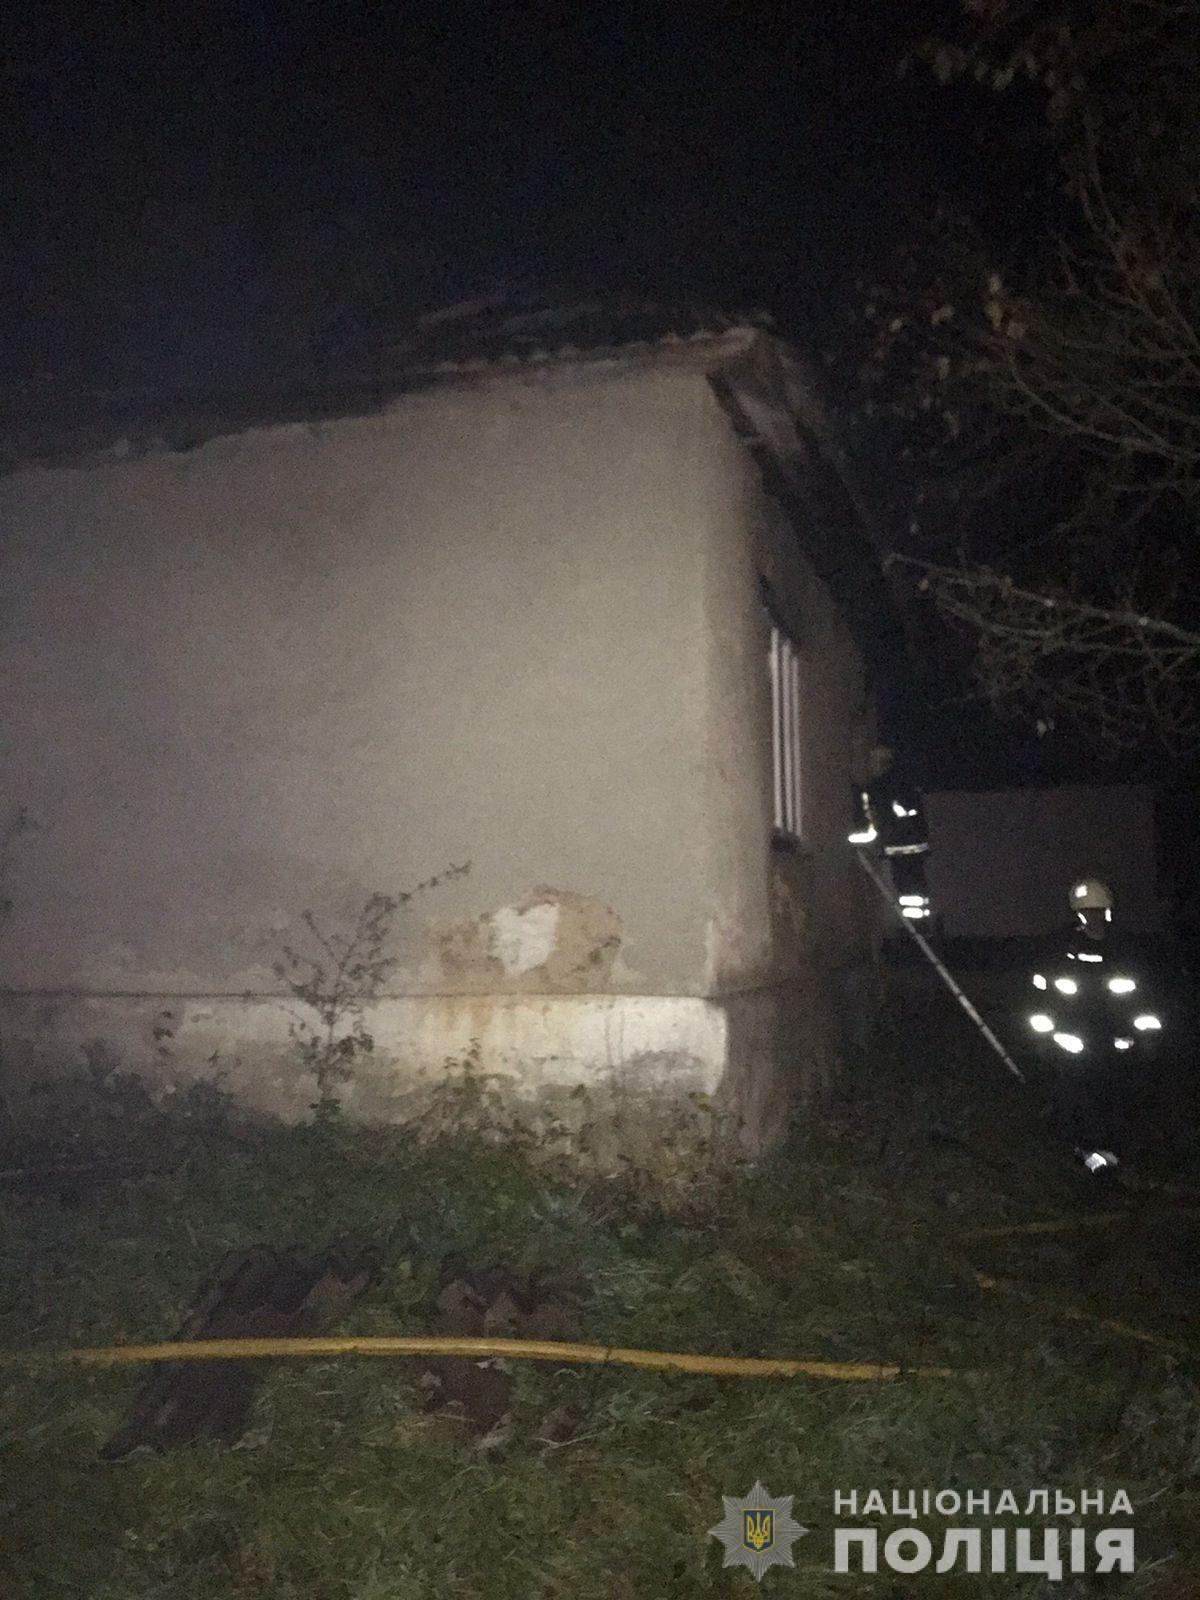 28 октября около 21:20 в полицию поступило сообщение от дежурного СЭС о возгорания в жилом доме в поселке Плоское Ручей Мукачевского района.